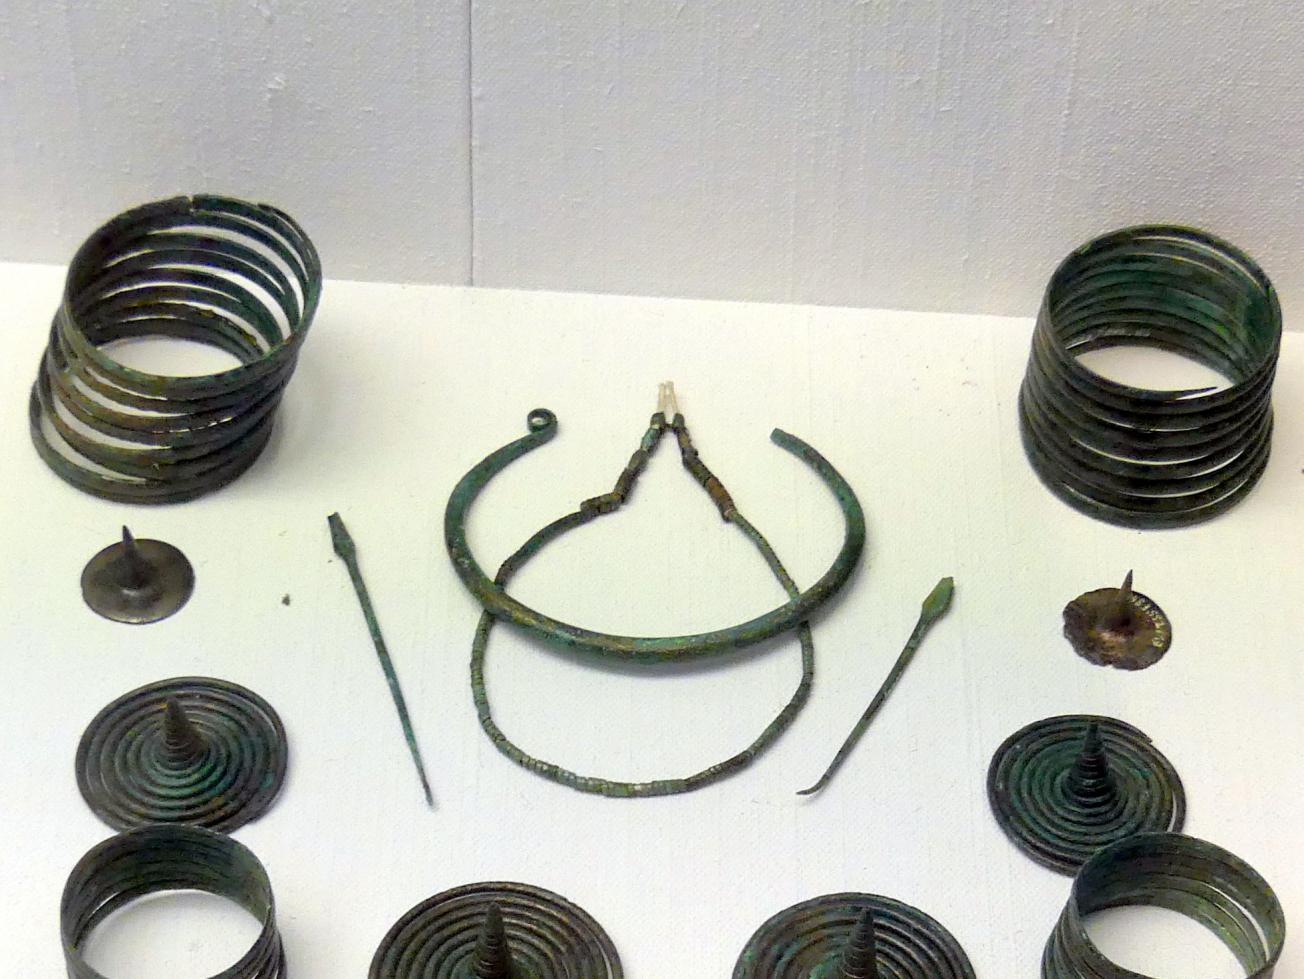 2 Spiralbeinringe, Frühe Bronzezeit, 3365 - 1200 v. Chr., Bild 1/2